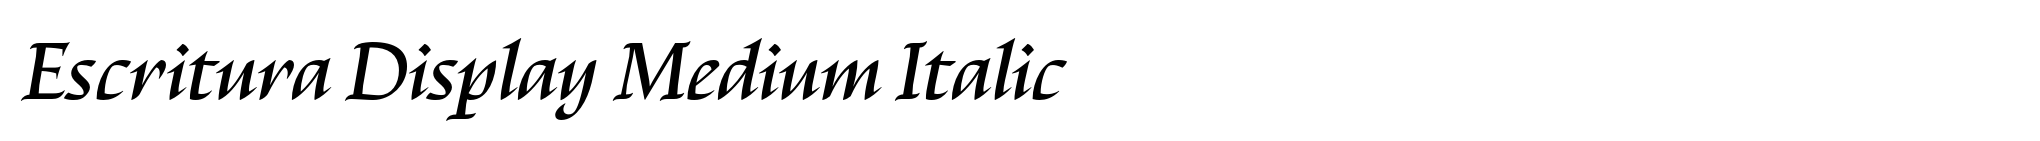 Escritura Display Medium Italic image